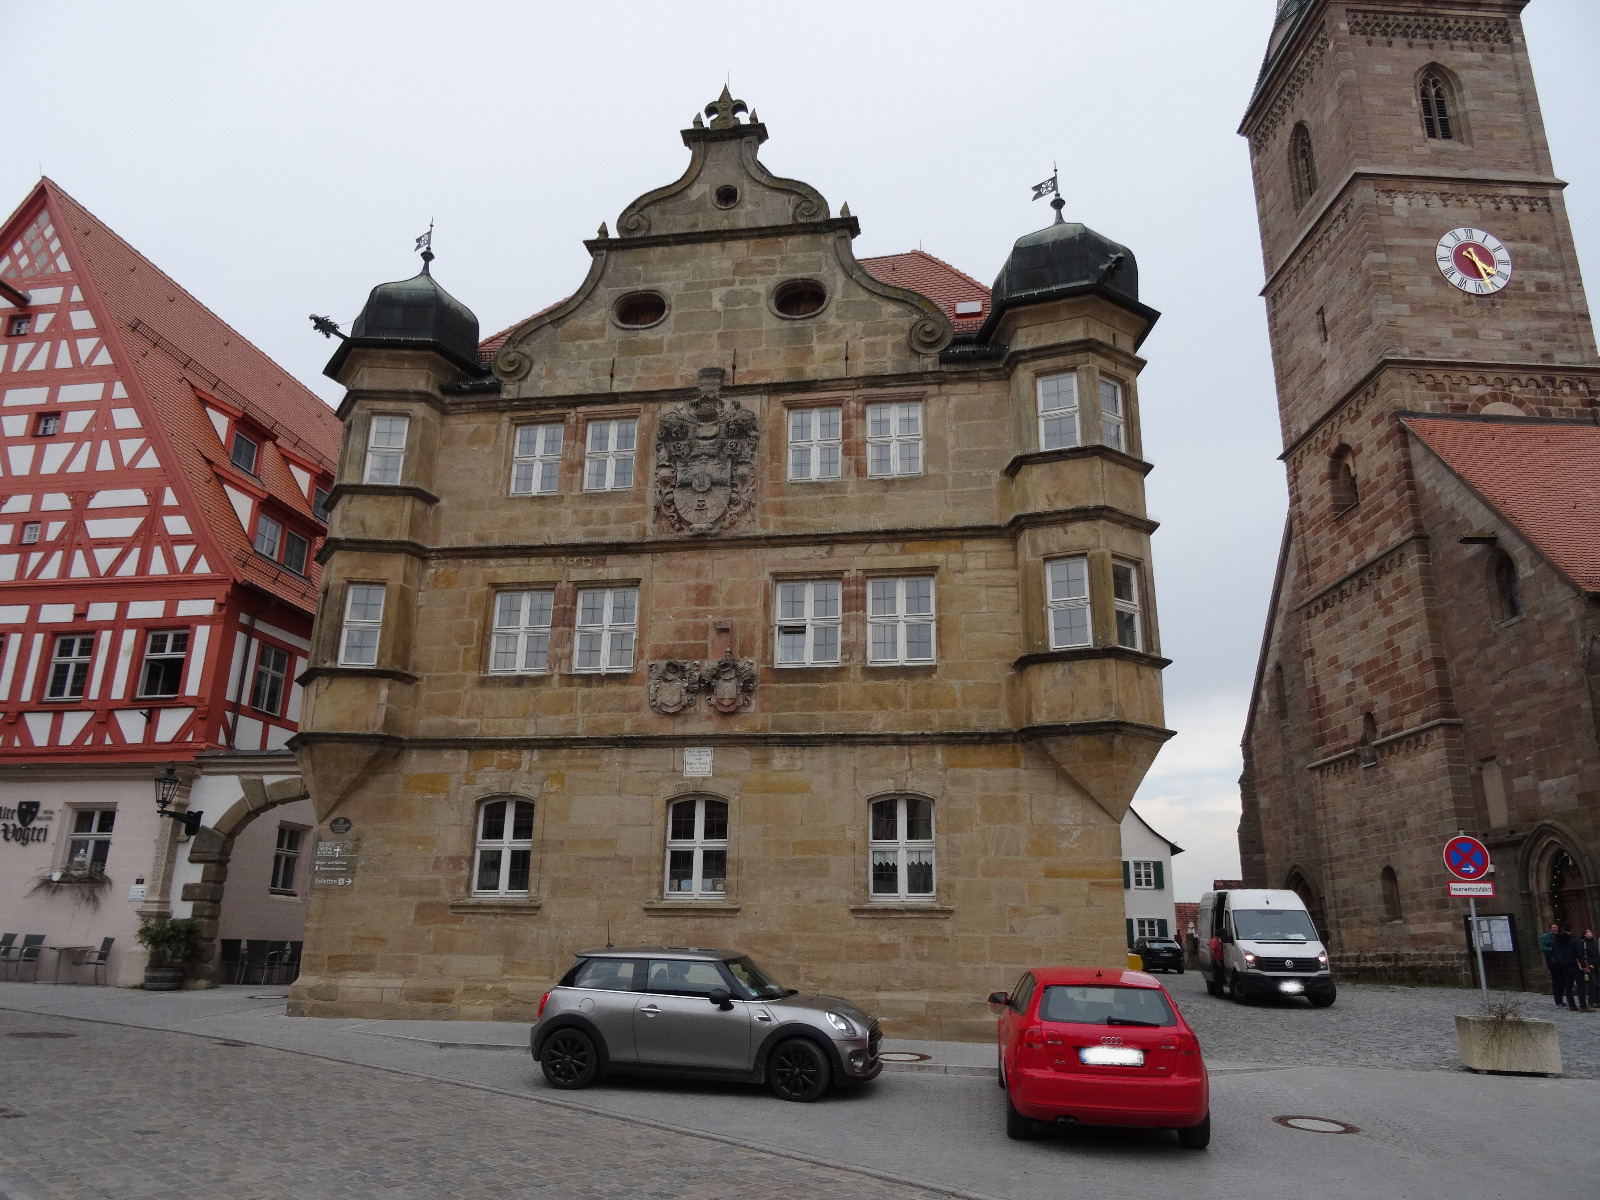 Das Bild zeigt das Deutschordensschloss in Eschenbach, sowie rechts dasvon einen Teil des alte Rathauses und links einen Teil des Liebfrauenmünsters, die Stadtpfarrkirche der Gemeinde.